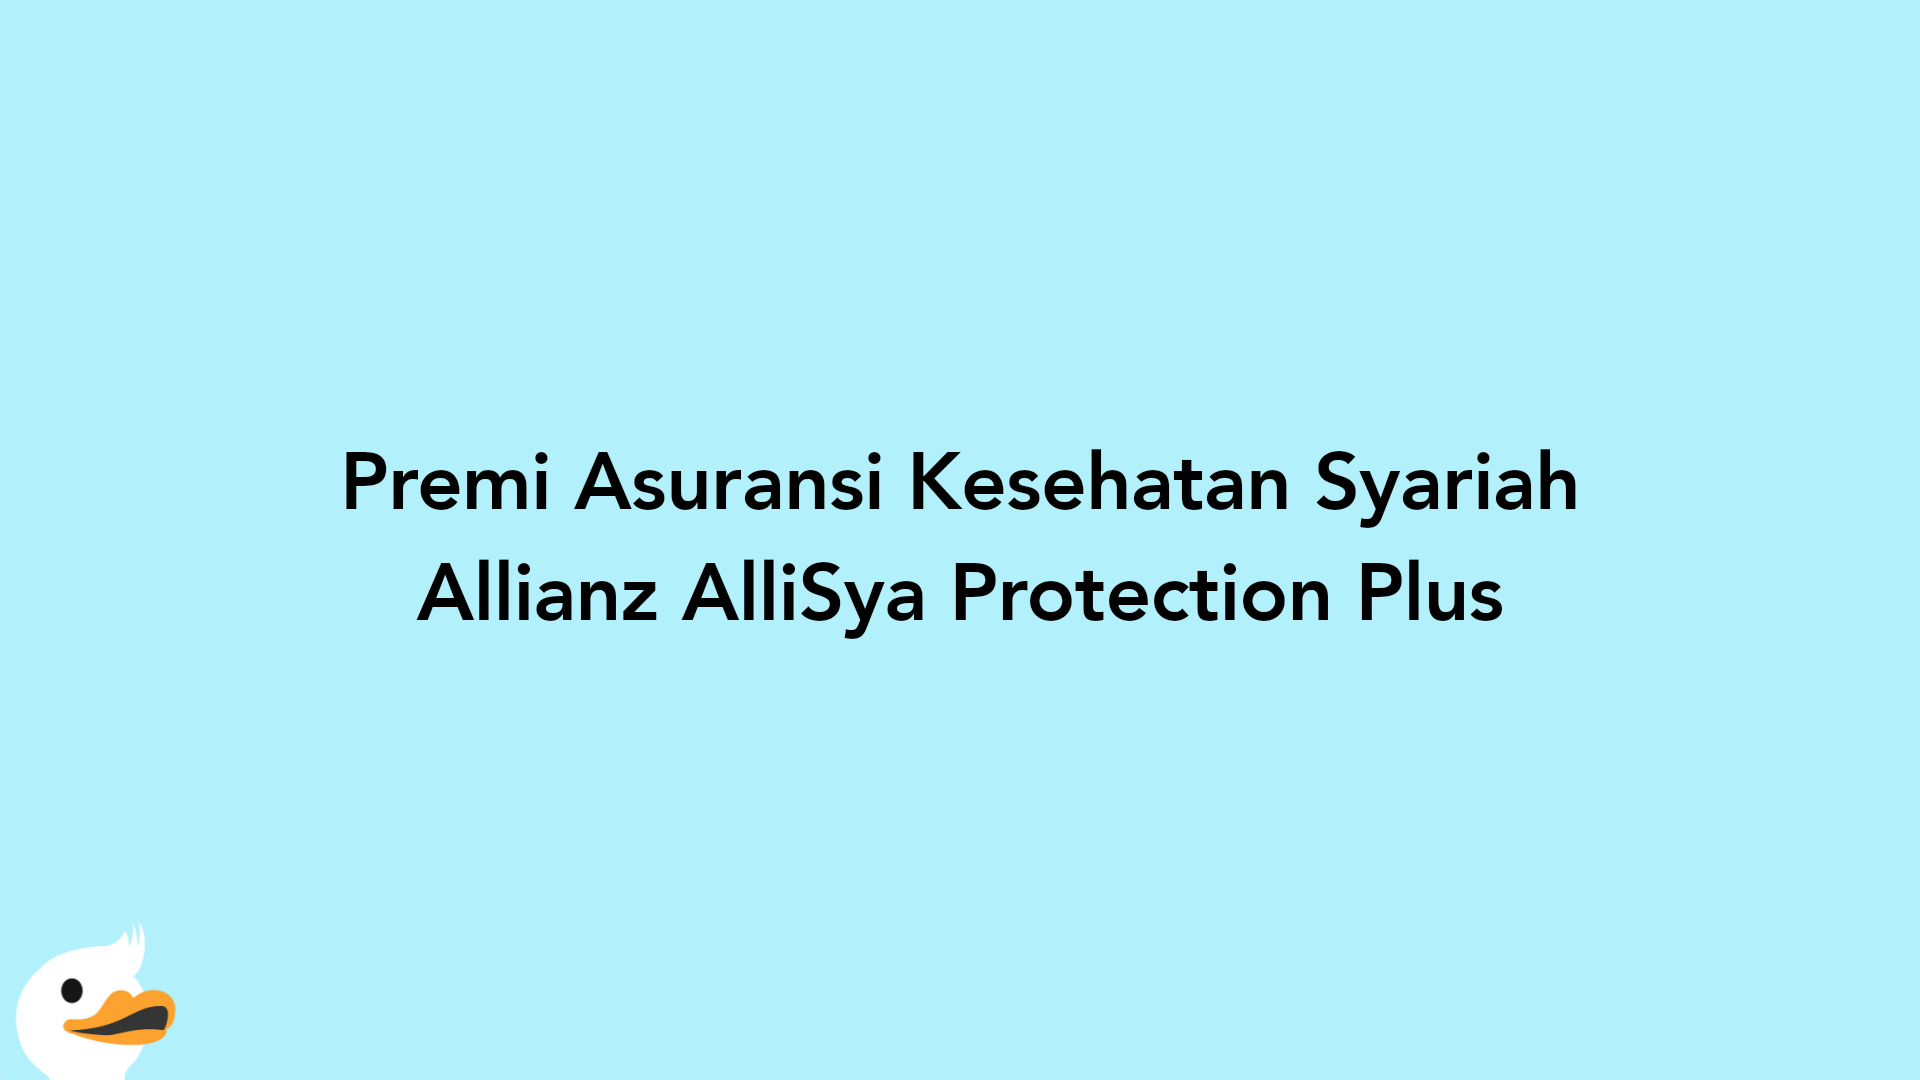 Premi Asuransi Kesehatan Syariah Allianz AlliSya Protection Plus